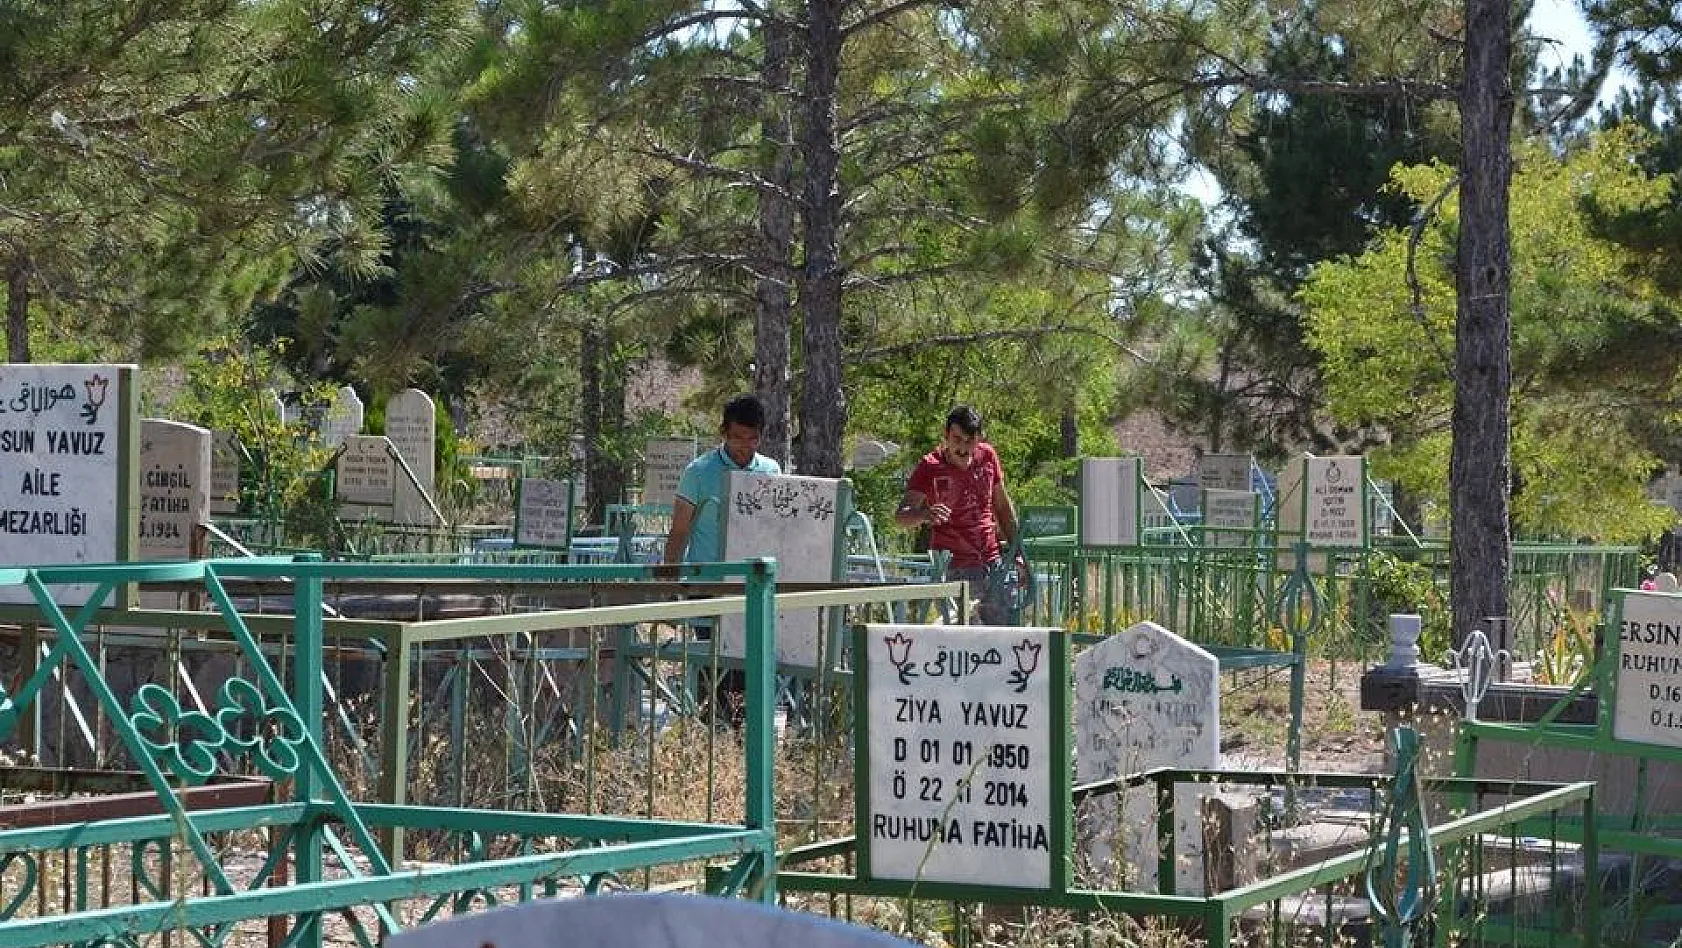  25 hükümlü mezarlıkta görüldü! 